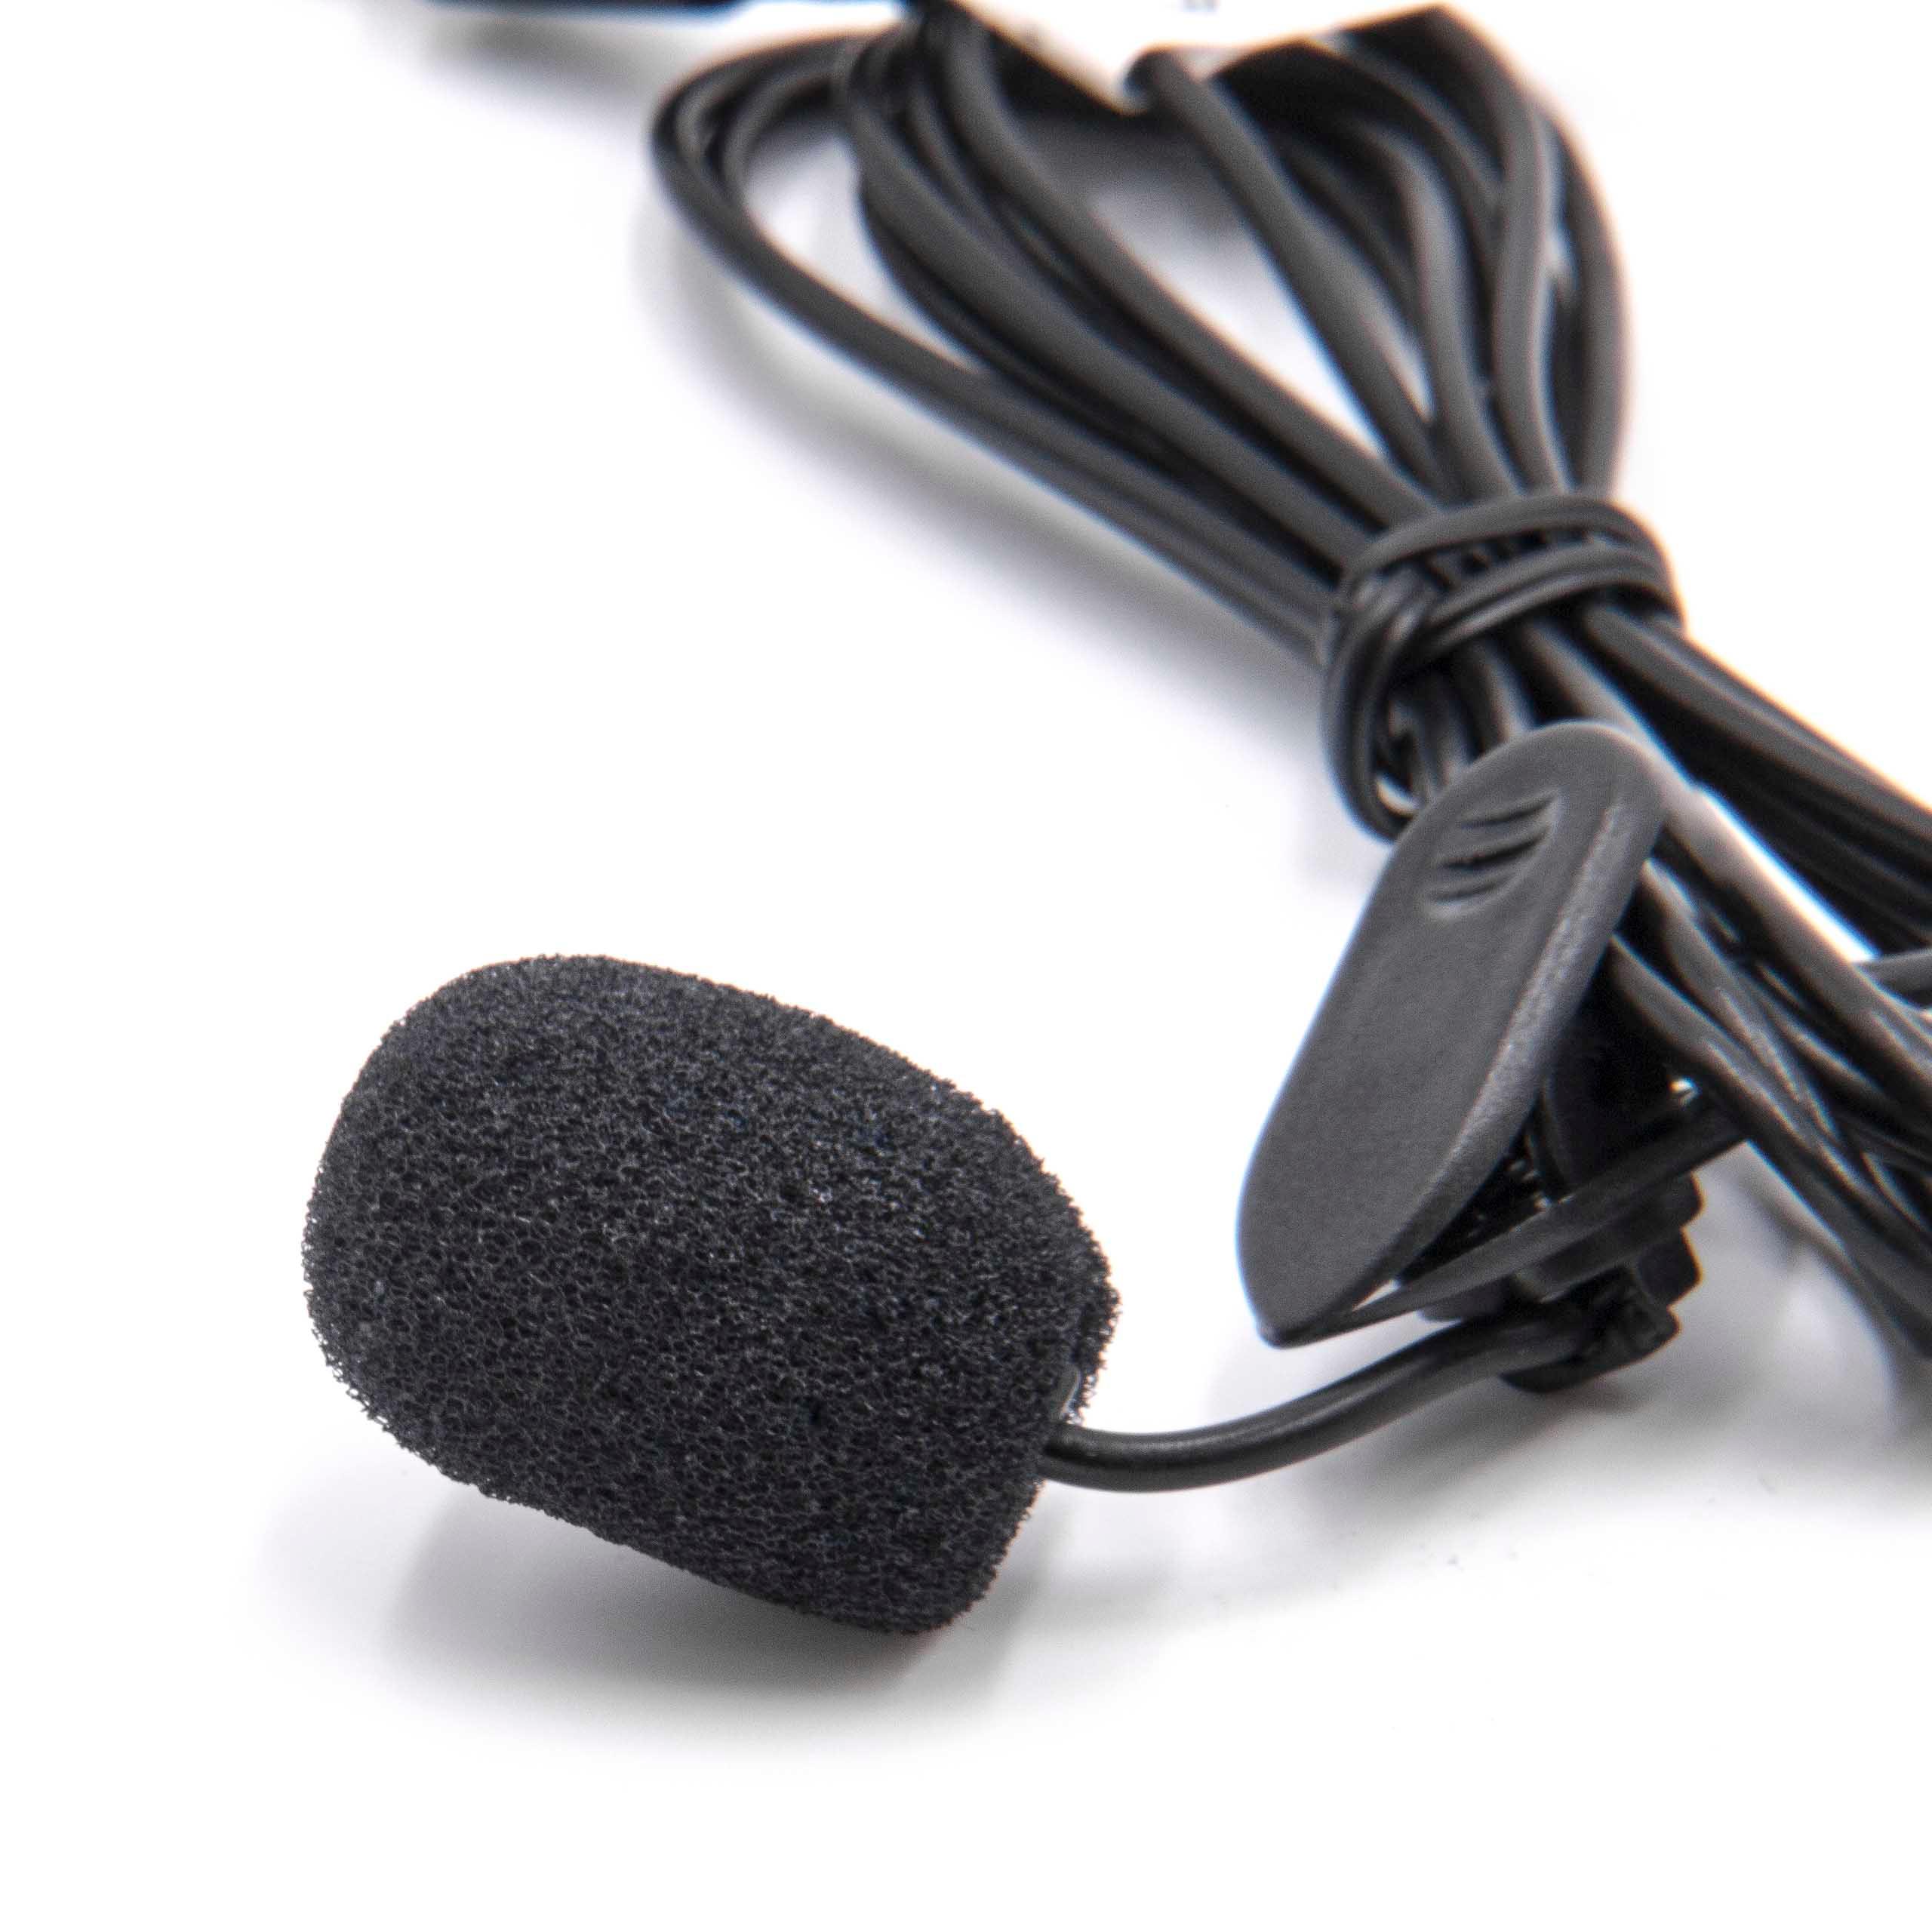 vhbw Lavalier Mikrofon für Handy, Smartphone - Externes Lapel Mic mit 3,5 mm-Anschluss Schwarz